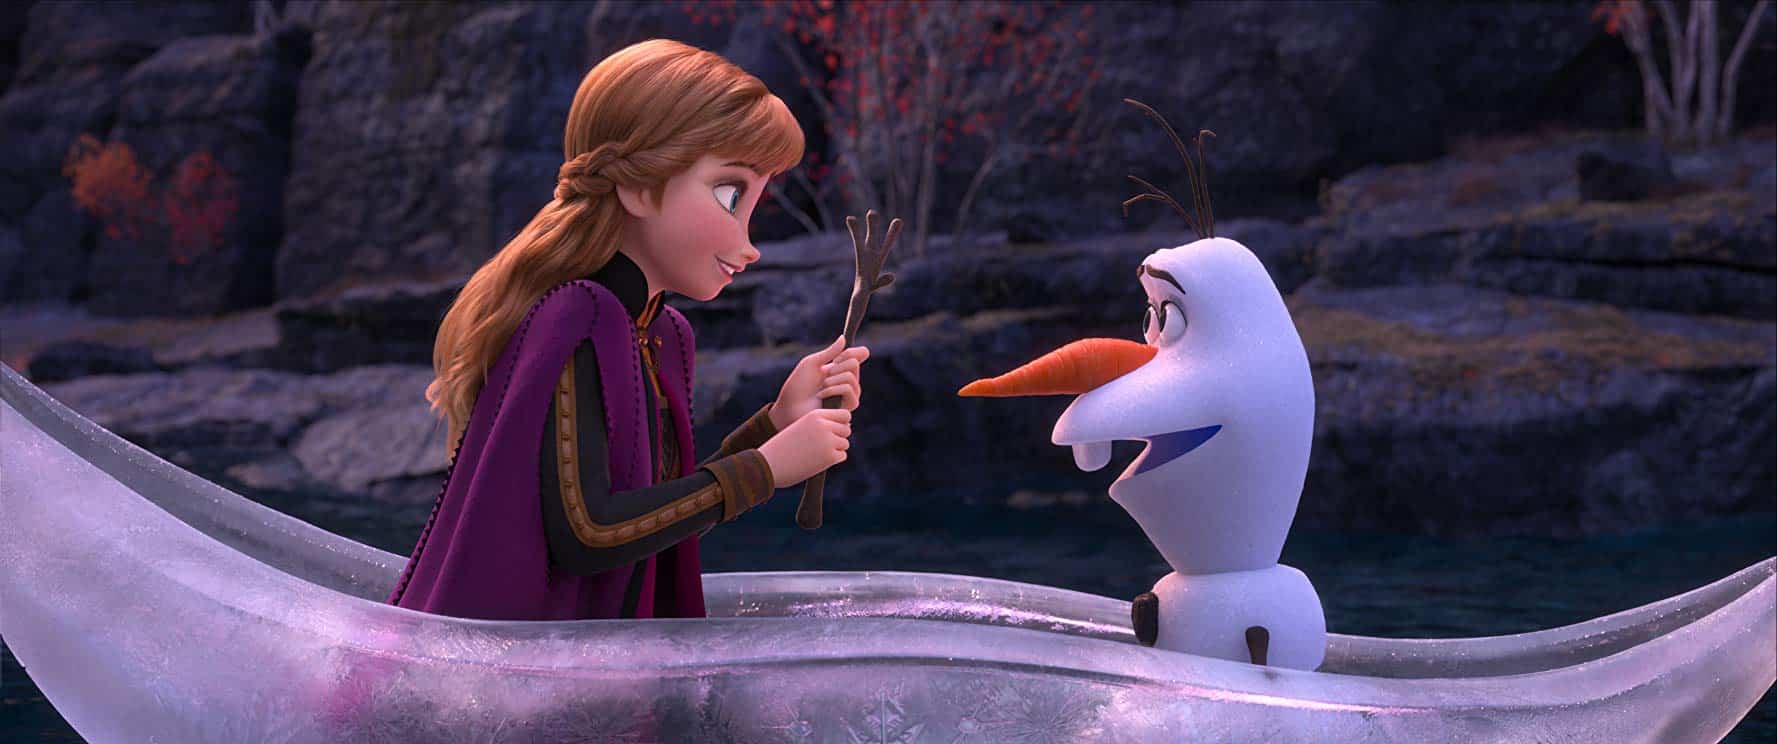 Fecha de estreno de Frozen 2 en España y último tráiler